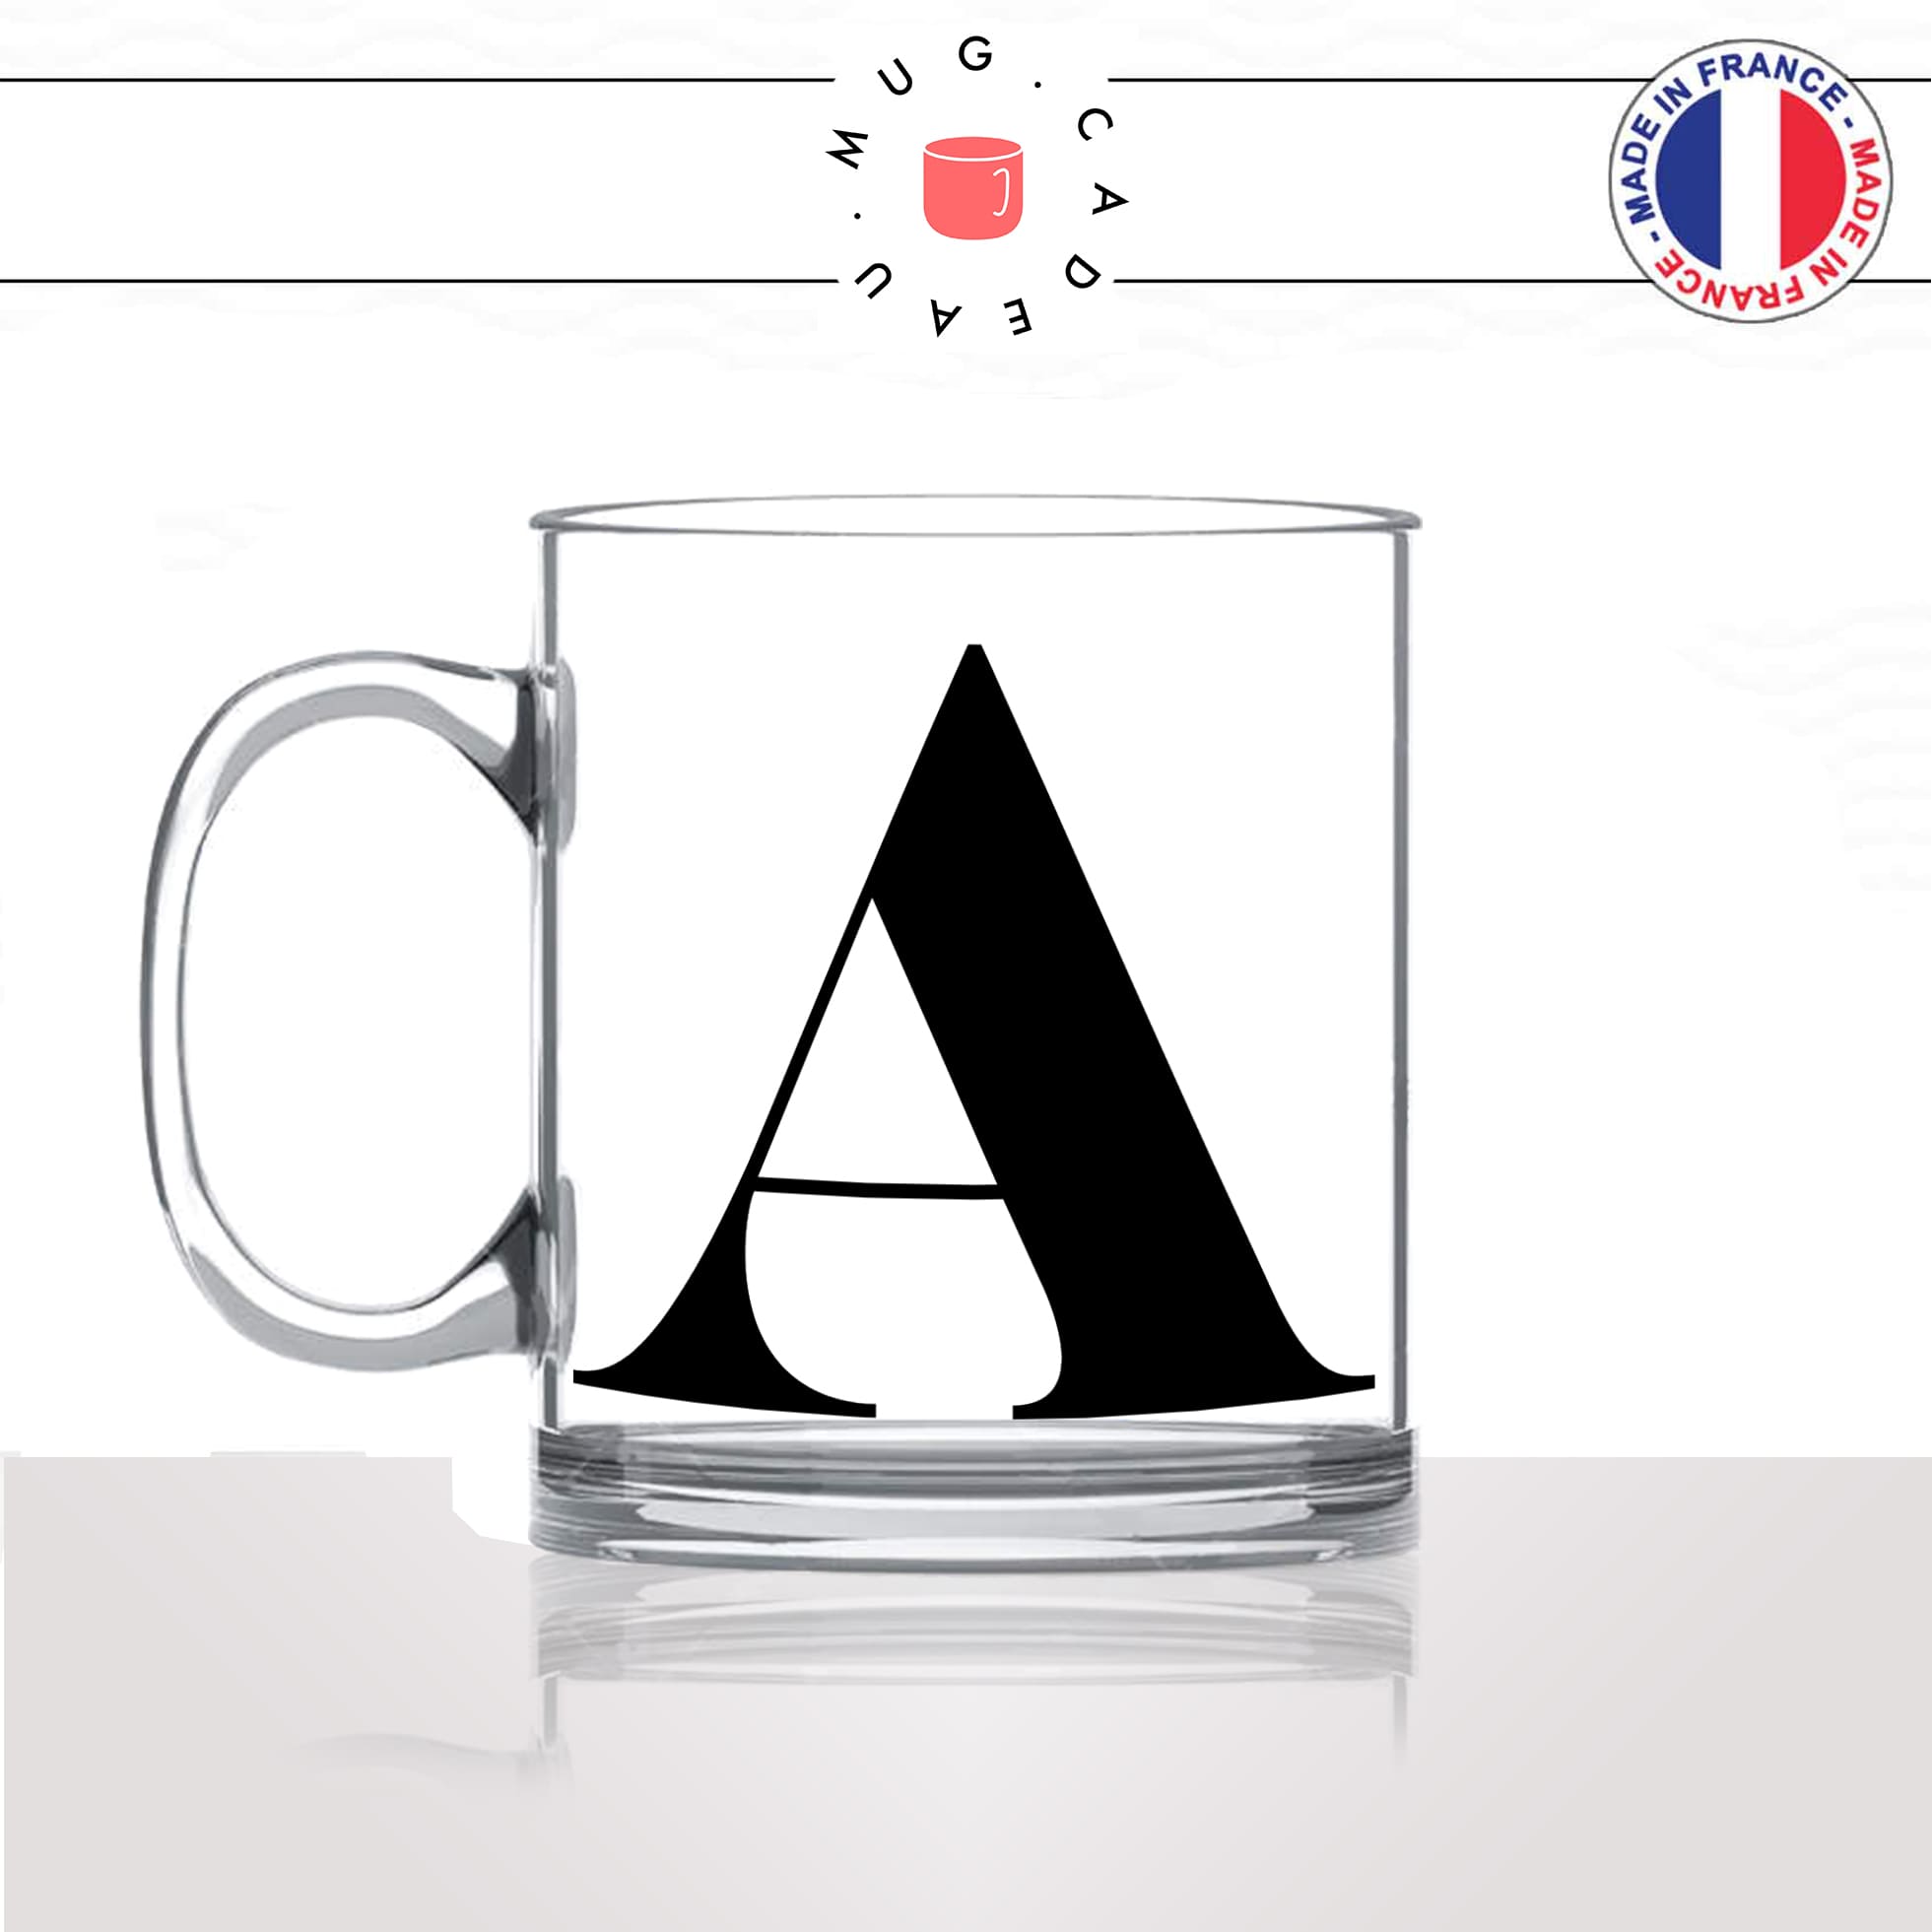 mug-tasse-en-verre-transparent-glass-initiale-A-prénom-audrey-anne-anais-alizée-aurélie-lettre-collegue-original-idée-cadeau-fun-cool-café-thé